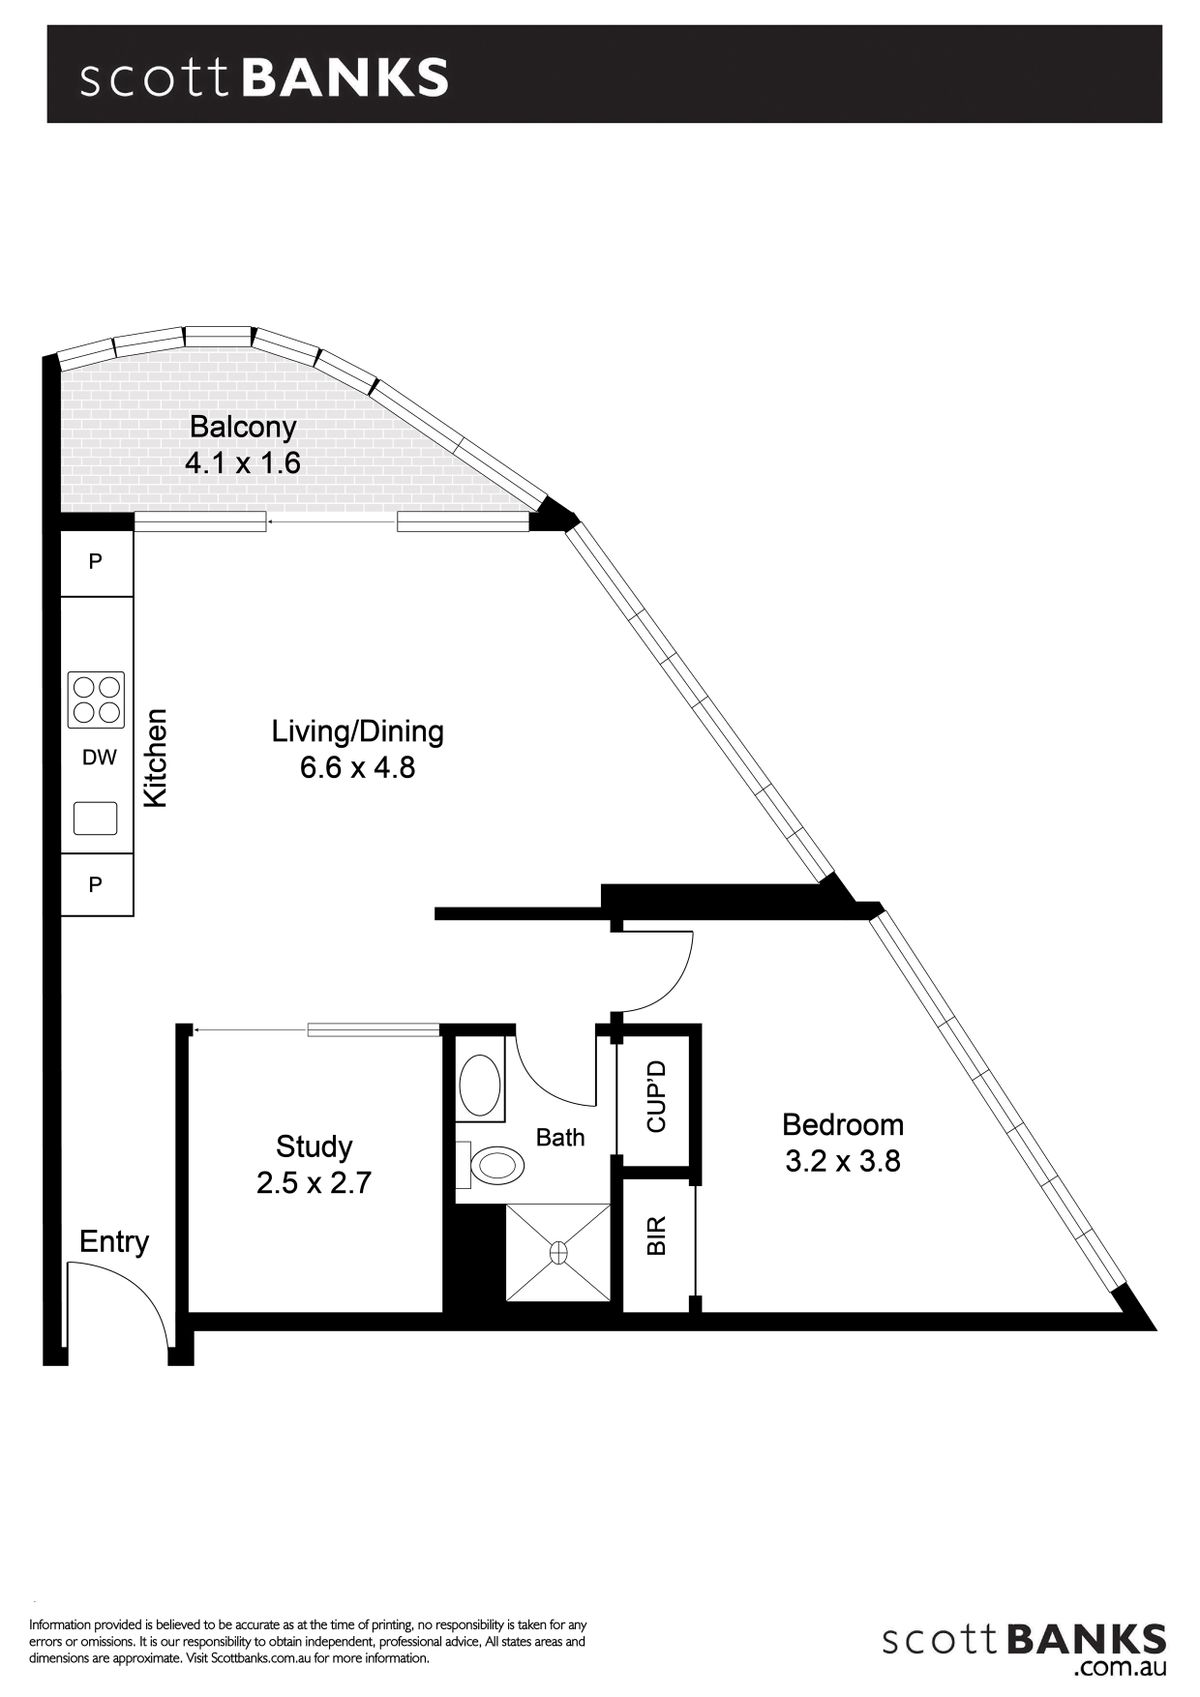 Floor plan for 618 555 st kilda road melbourne 3004